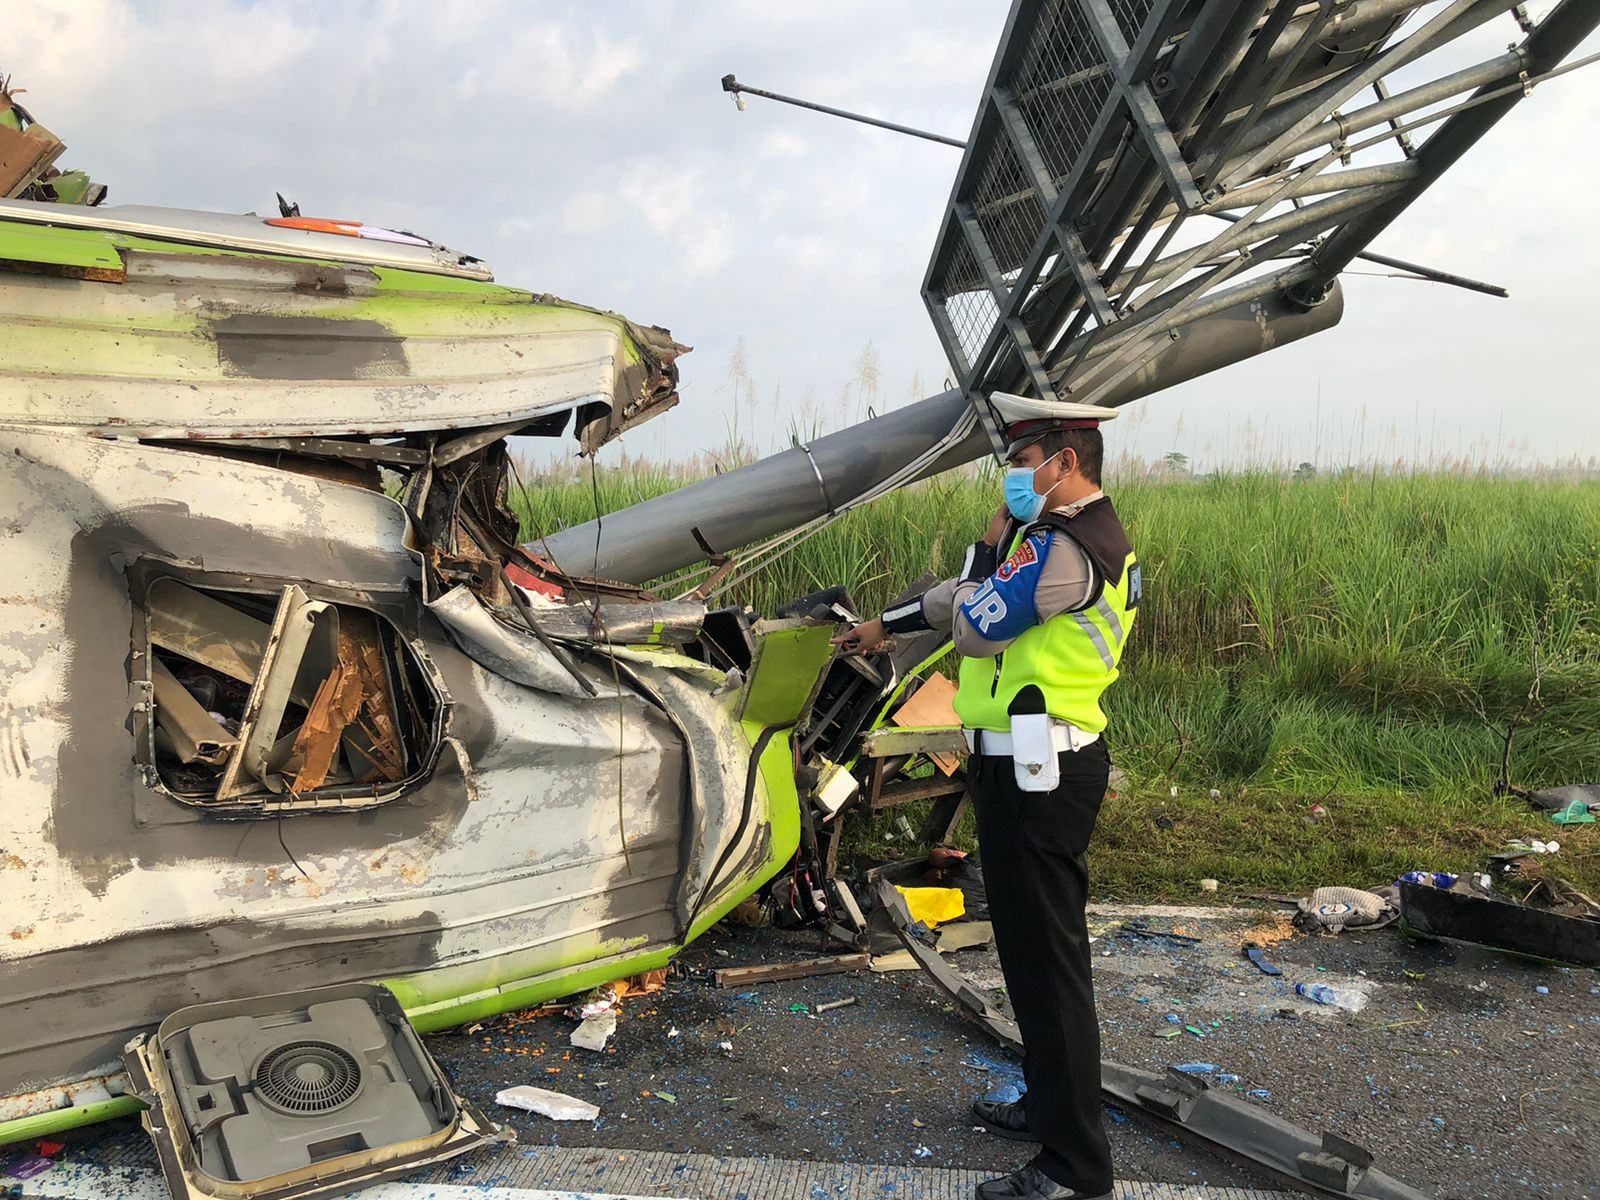 Polisi Beberkan Kabar Terbaru Penyebab Bus Ardiansyah Kecelakaan - JPNN.com Jatim